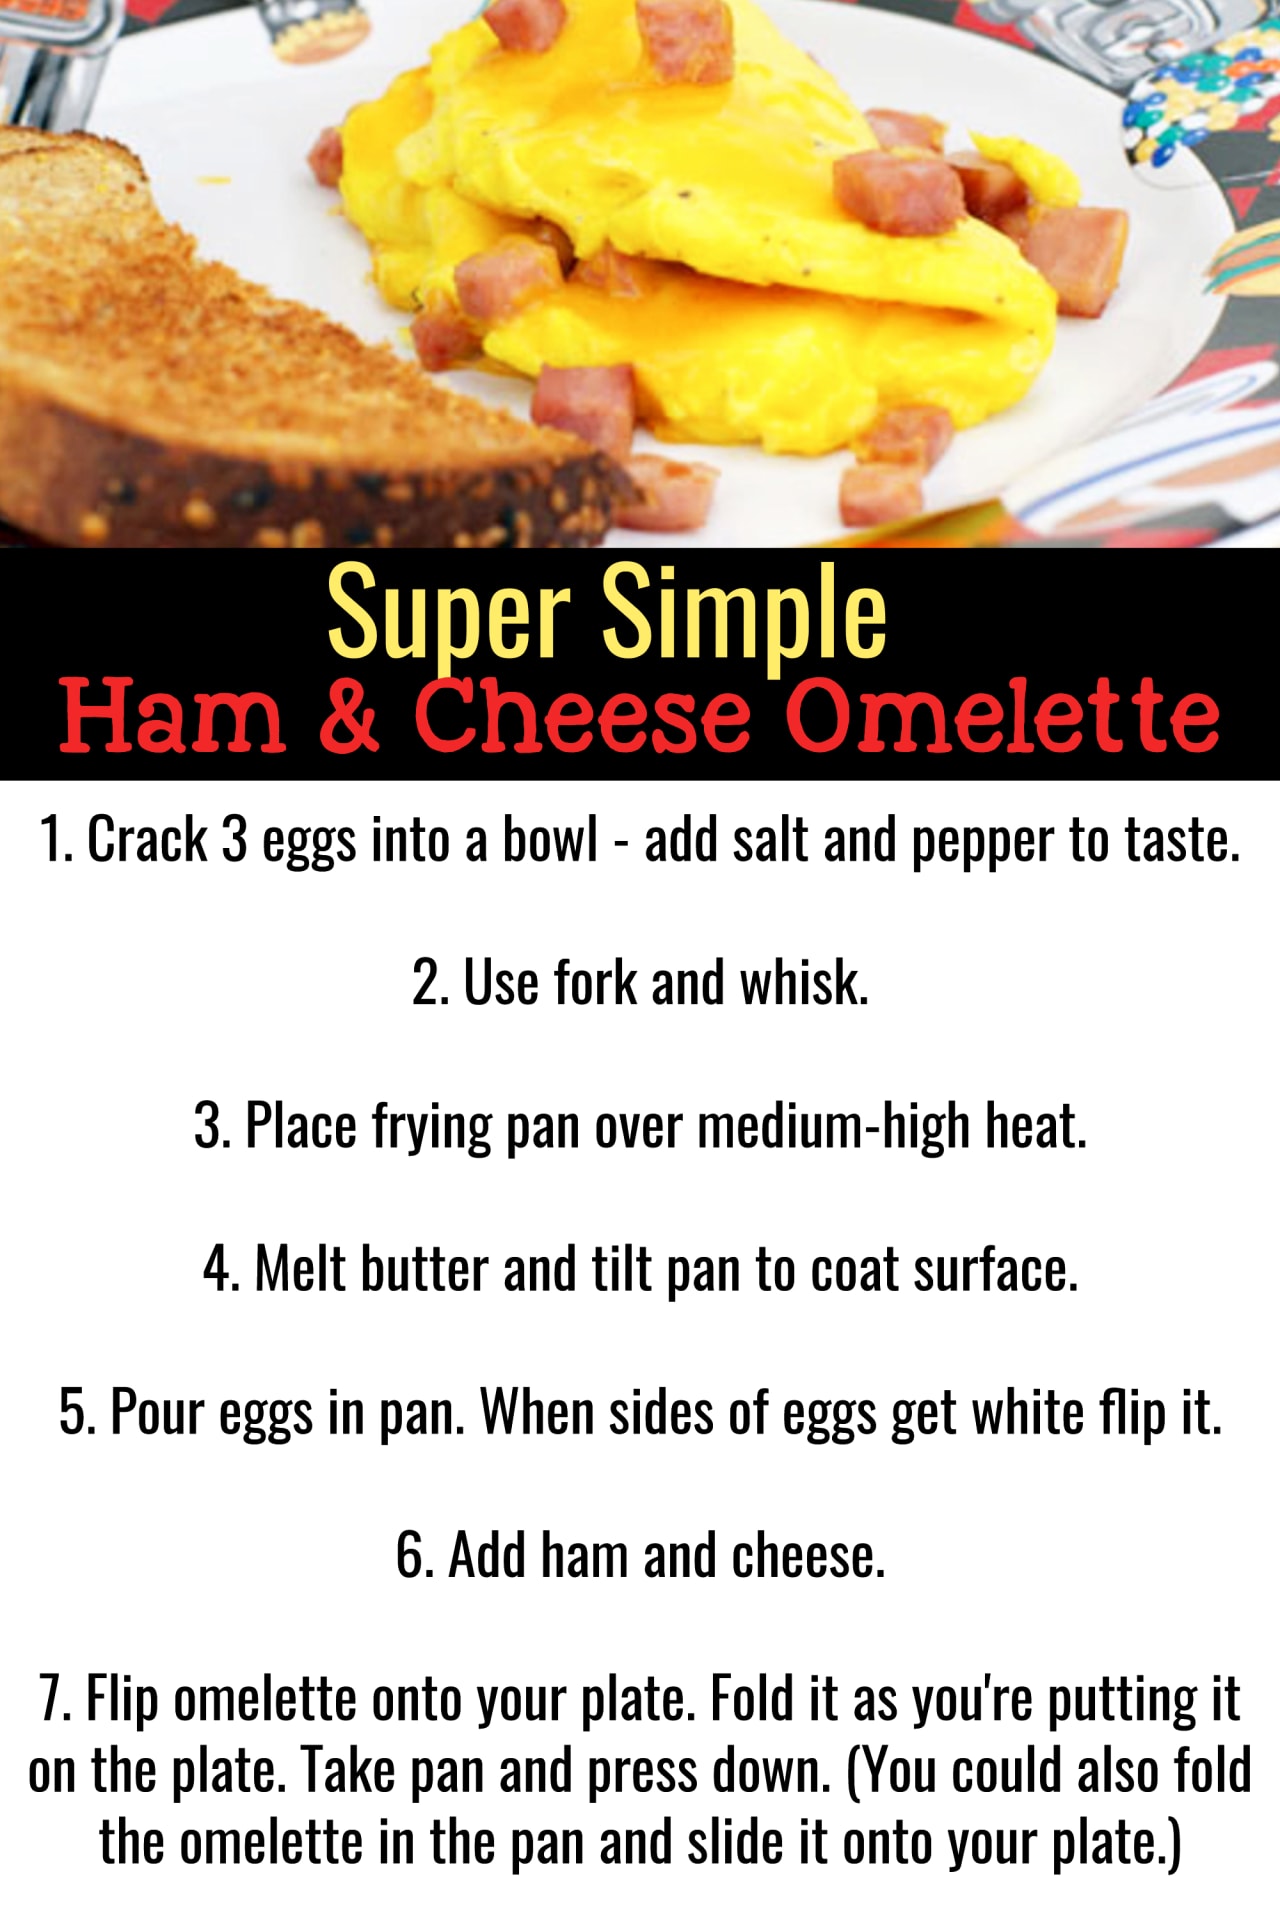 Omelette Recipes - Easy Healthy Omelette Recipes For Beginners - How to make an omelette videos - easy breakfast food ideas - best easy omelette recipes - basic omelette recipes for breakfast - ham and cheese omelette recipes - how to make a ham and cheese omelette easy recipe for beginners